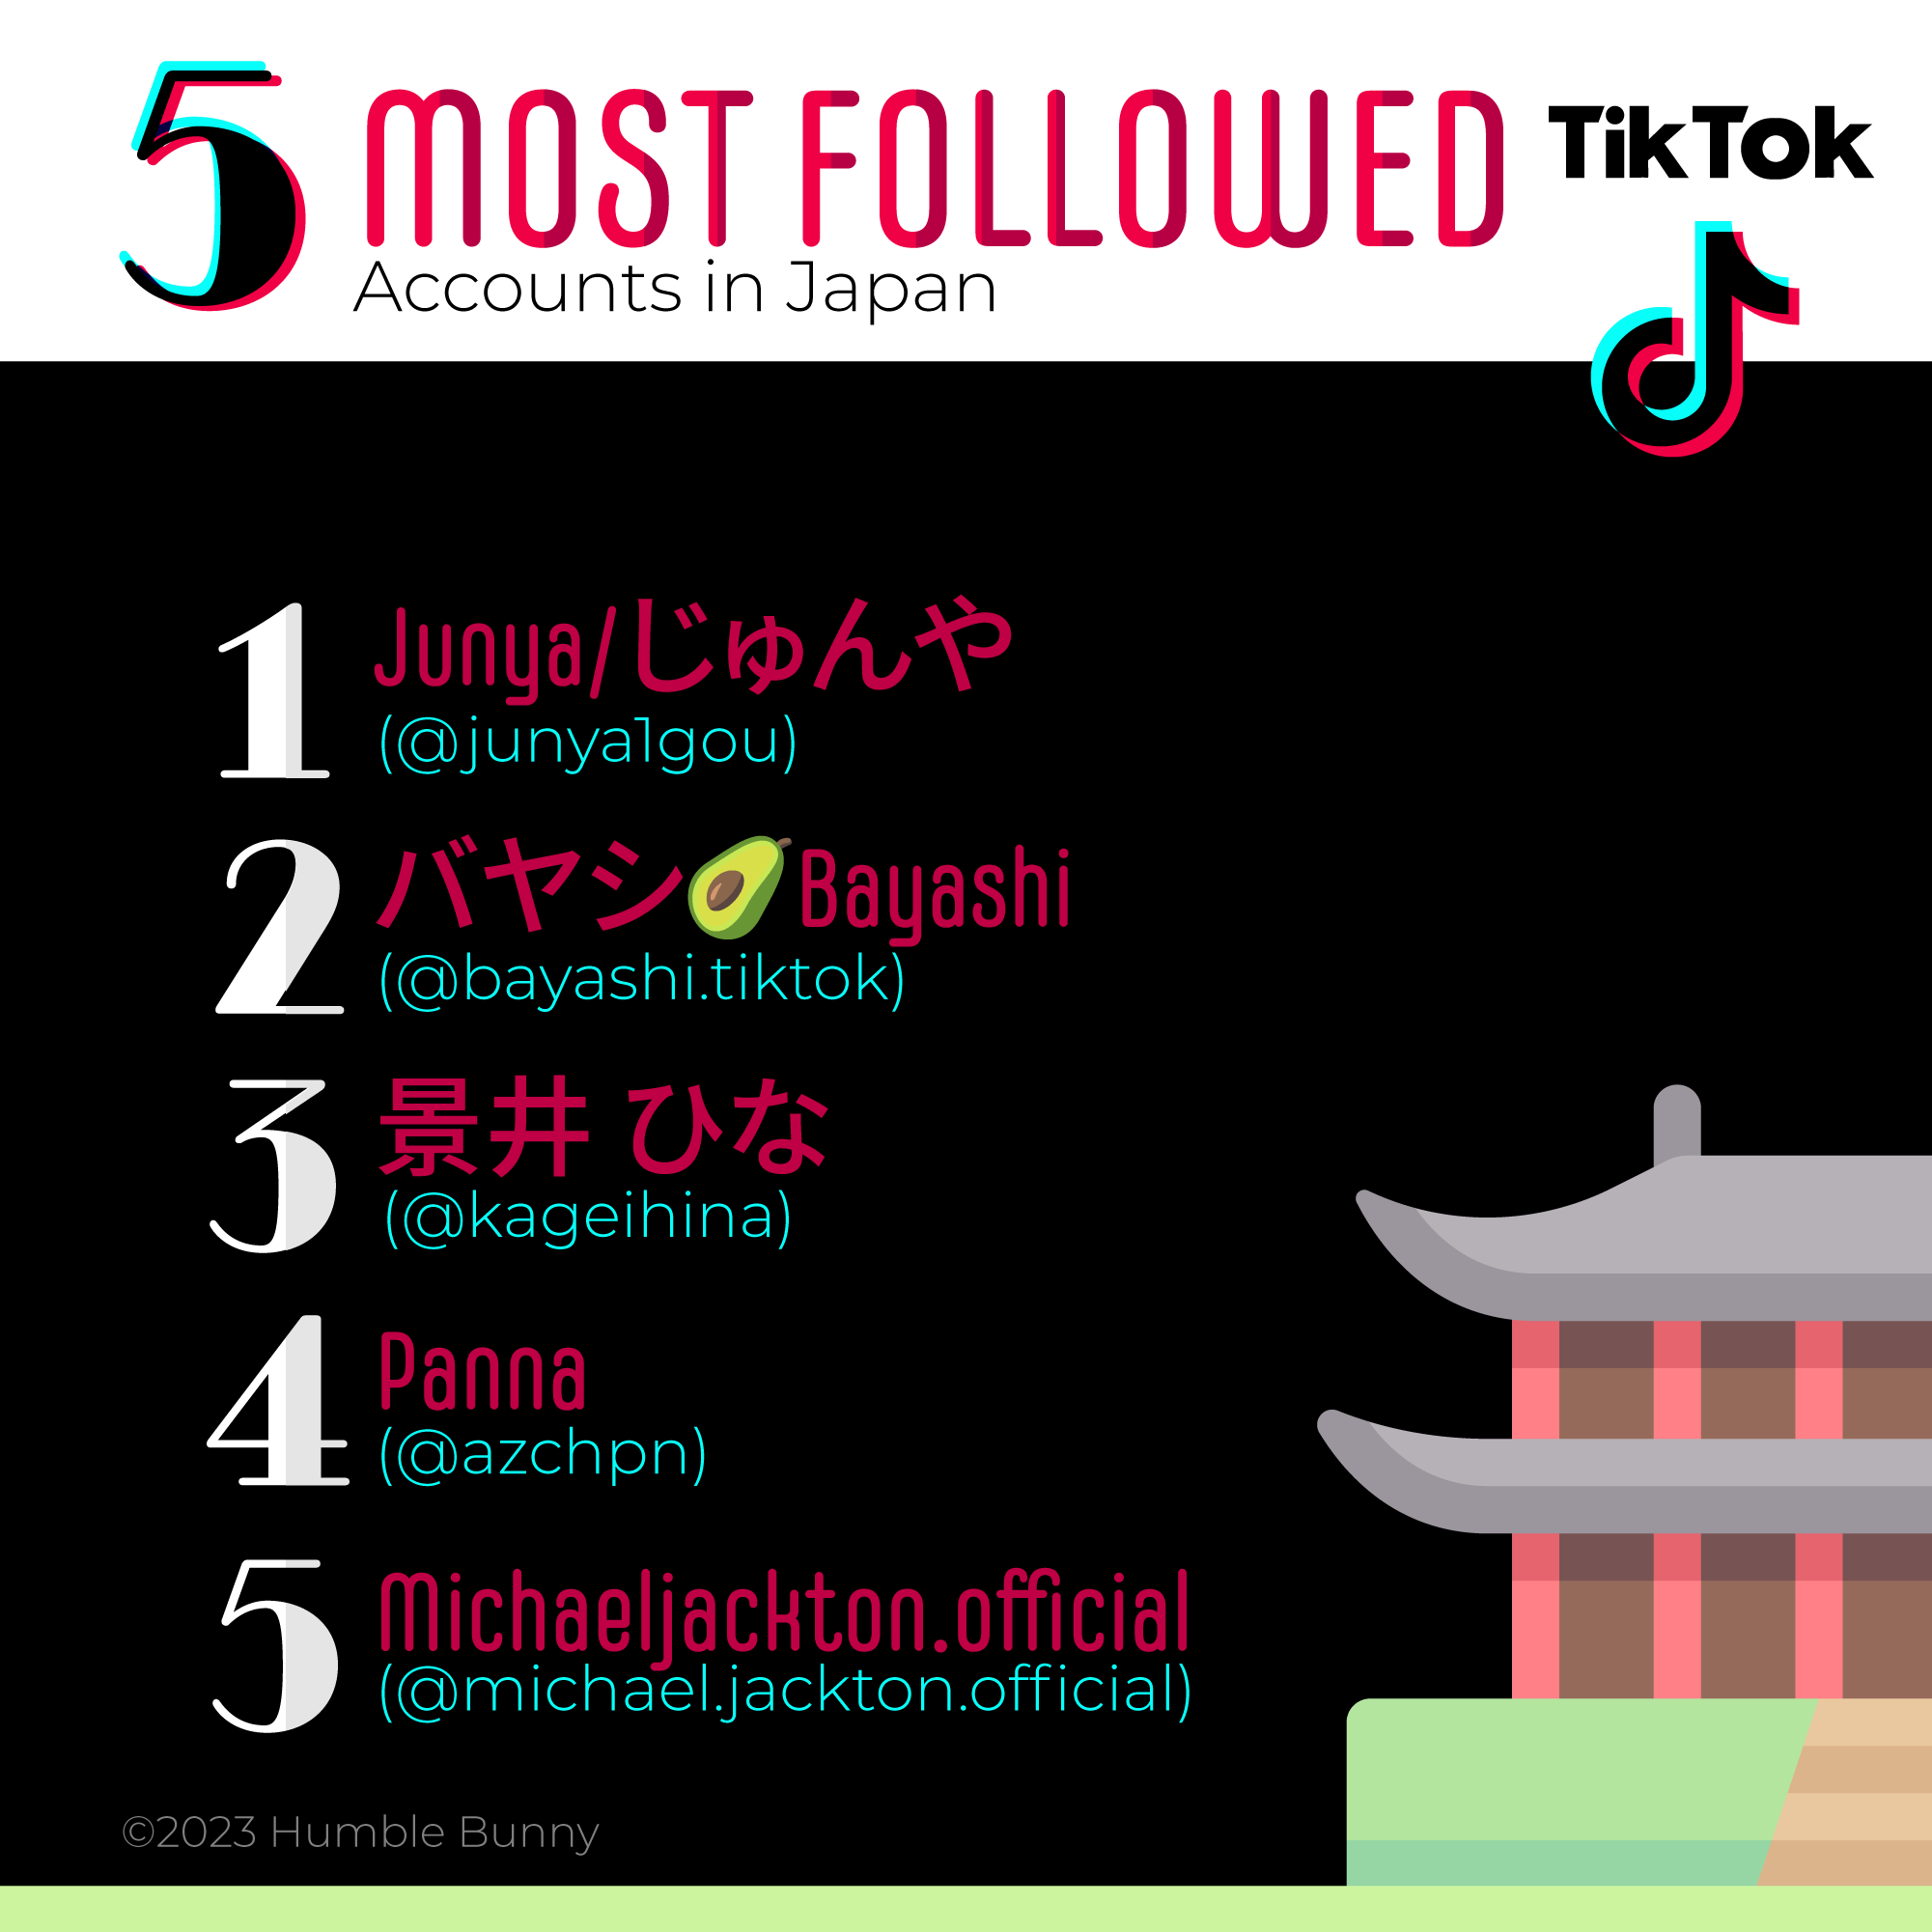 Most popular TikTok accounts in Japan social media 2023